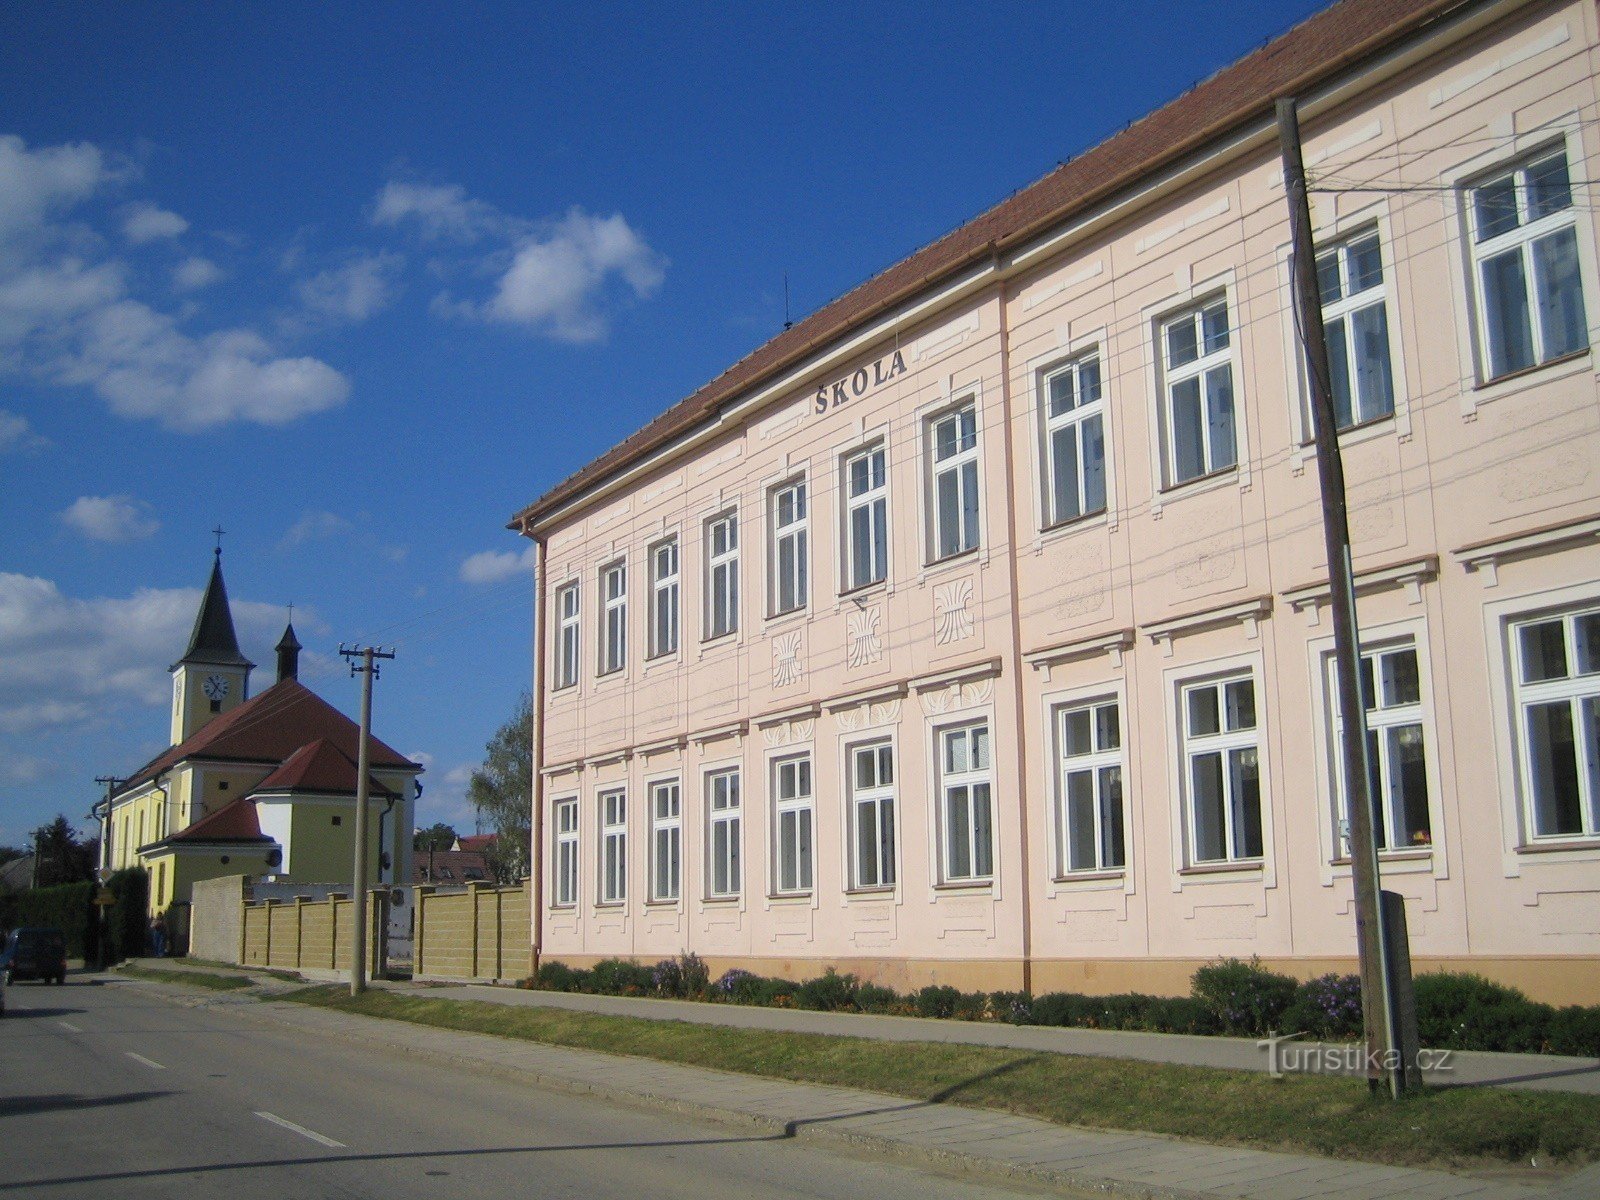 Topolná - šola in cerkev